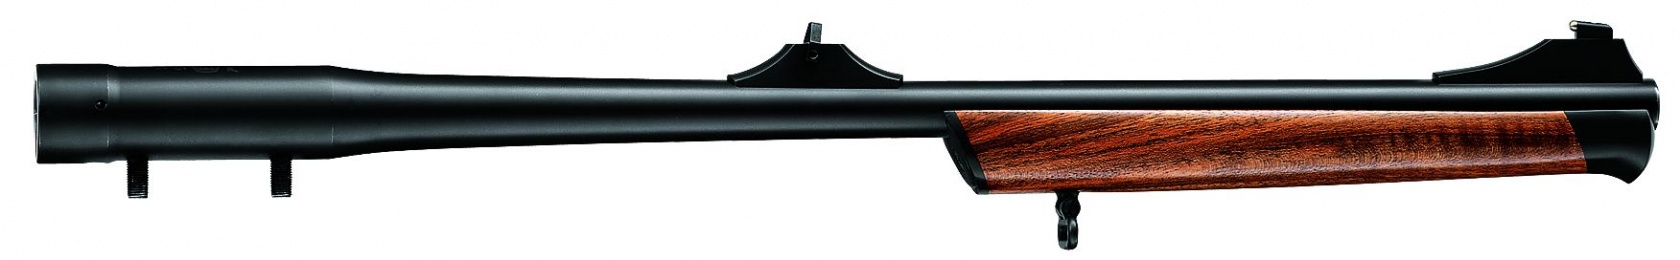 Mauser М03 Stutzen